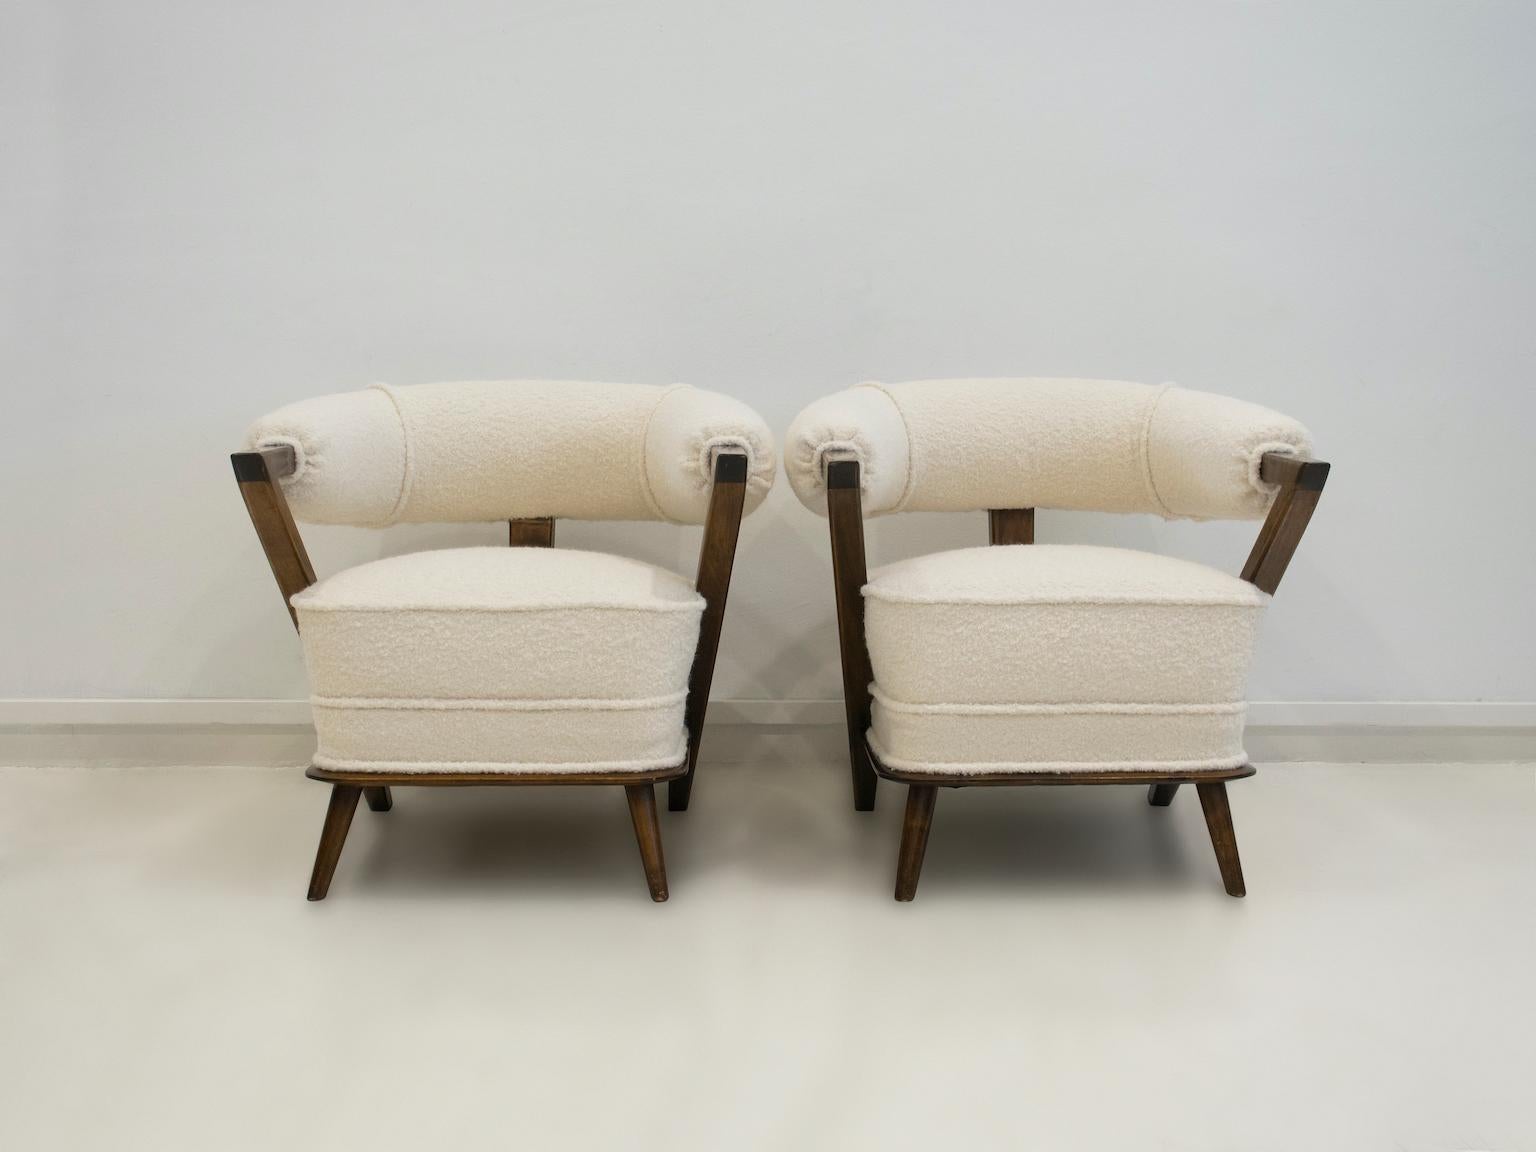 Paar elegante weiße Wannensessel im Art-déco-Stil, hergestellt in Italien in den 1960er Jahren. Gestell aus dunkel gebeiztem Holz und neue Polsterung aus weißem Bouclé-Stoff. Leichte Abnutzung am Holzteil der Armlehnen.